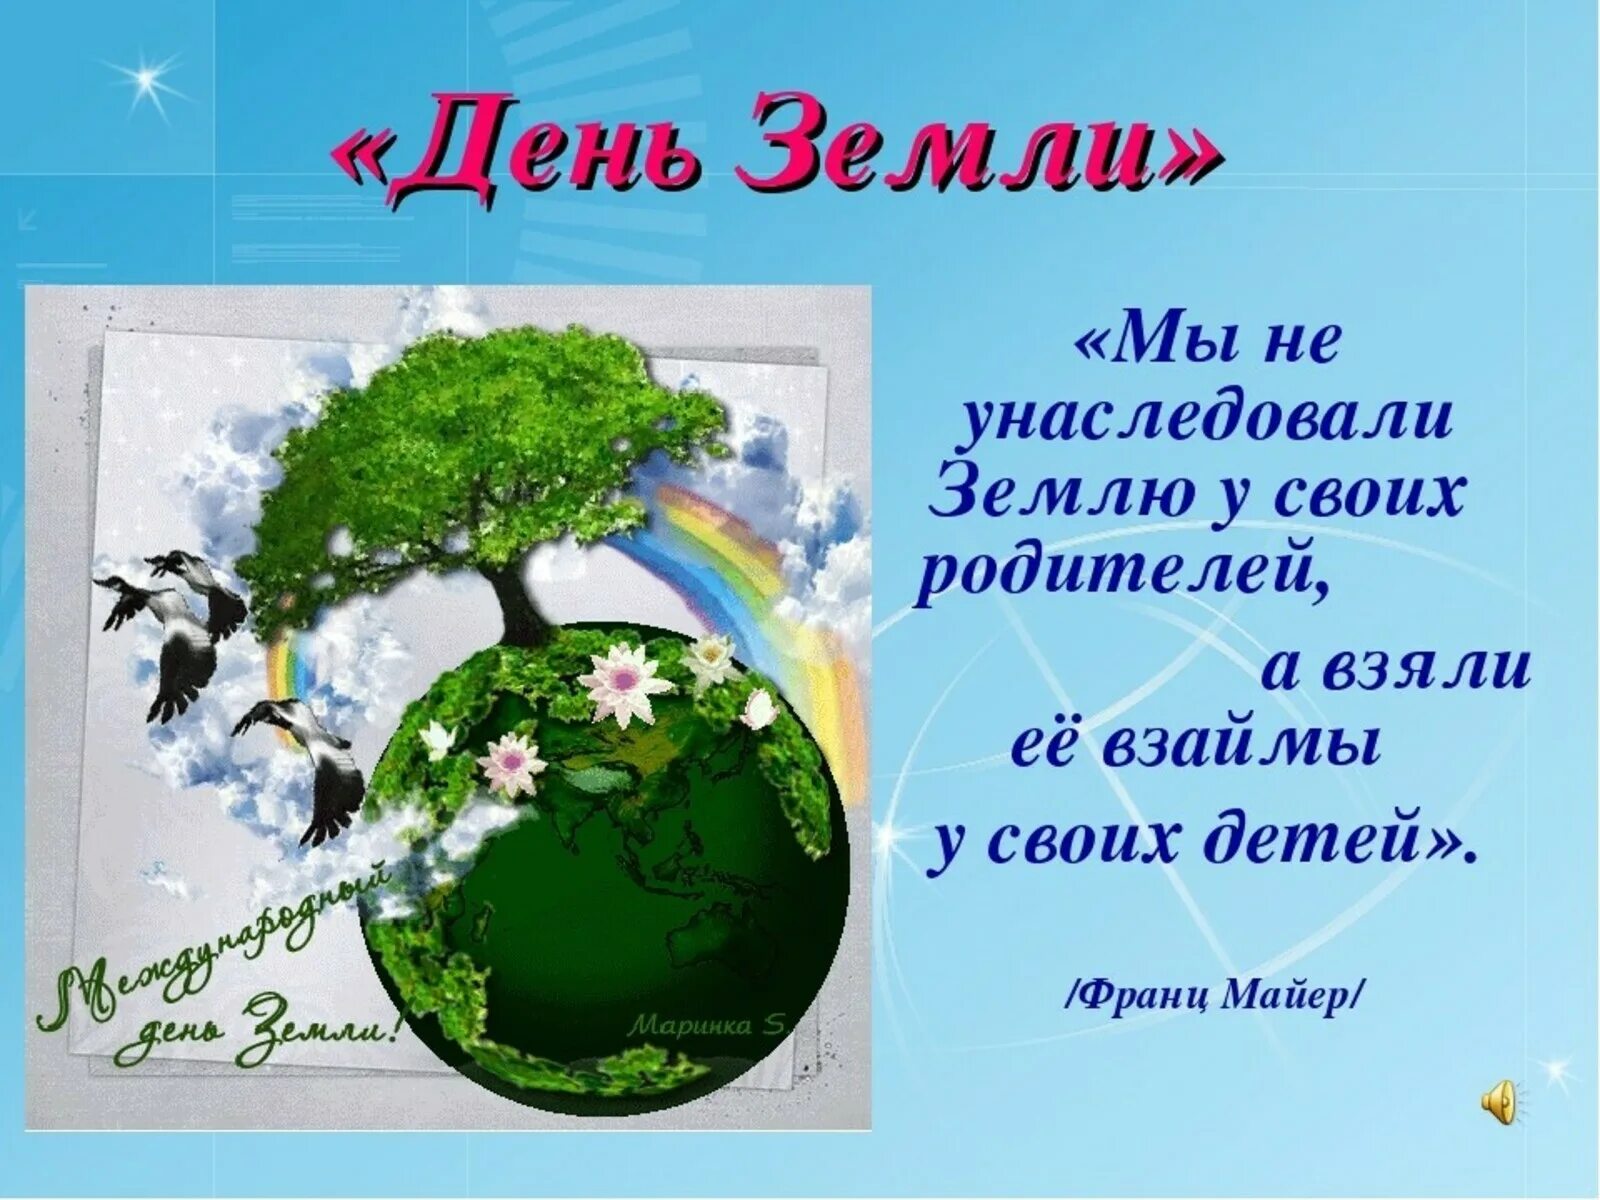 22 апреля что за праздник. День земли. Всемирный день земли. С днем земли поздравления. День земли открытка.